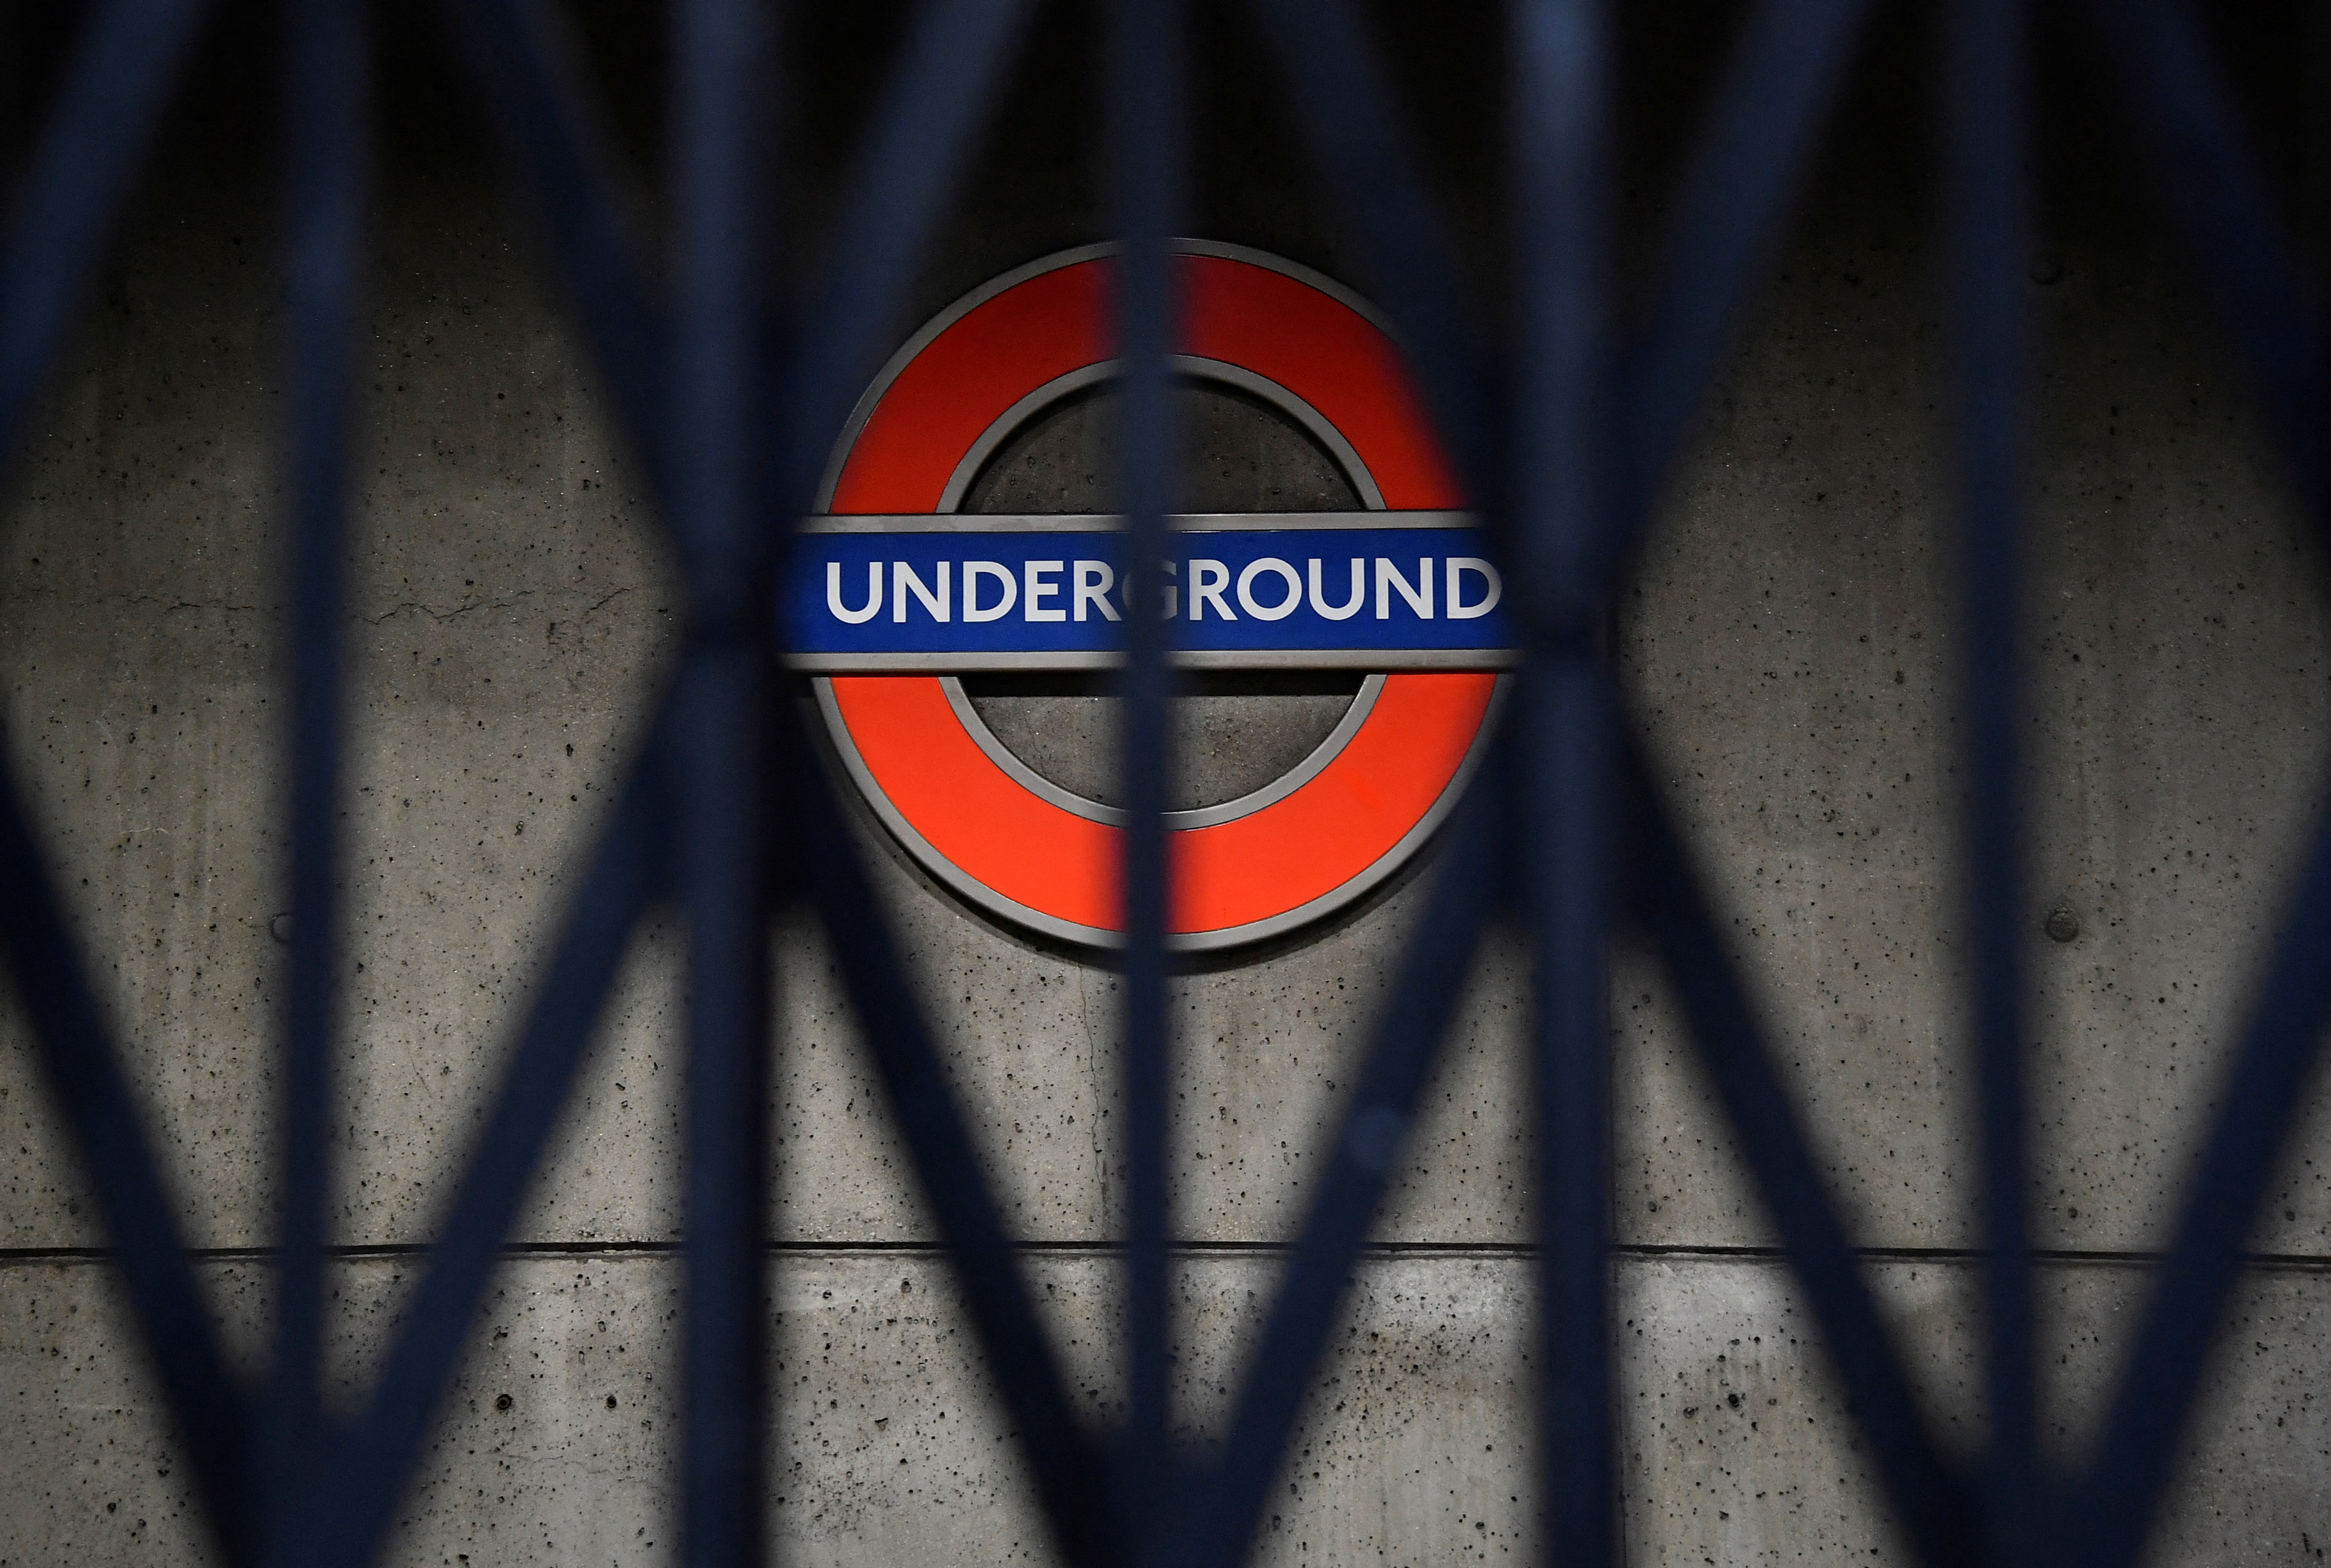 FOTO DE ARCHIVO: Una entrada de la estación de metro permanece cerrada en la estación de Westminster- Londres, Gran Bretaña, 1 de marzo de 2022. REUTERS/Toby Melville